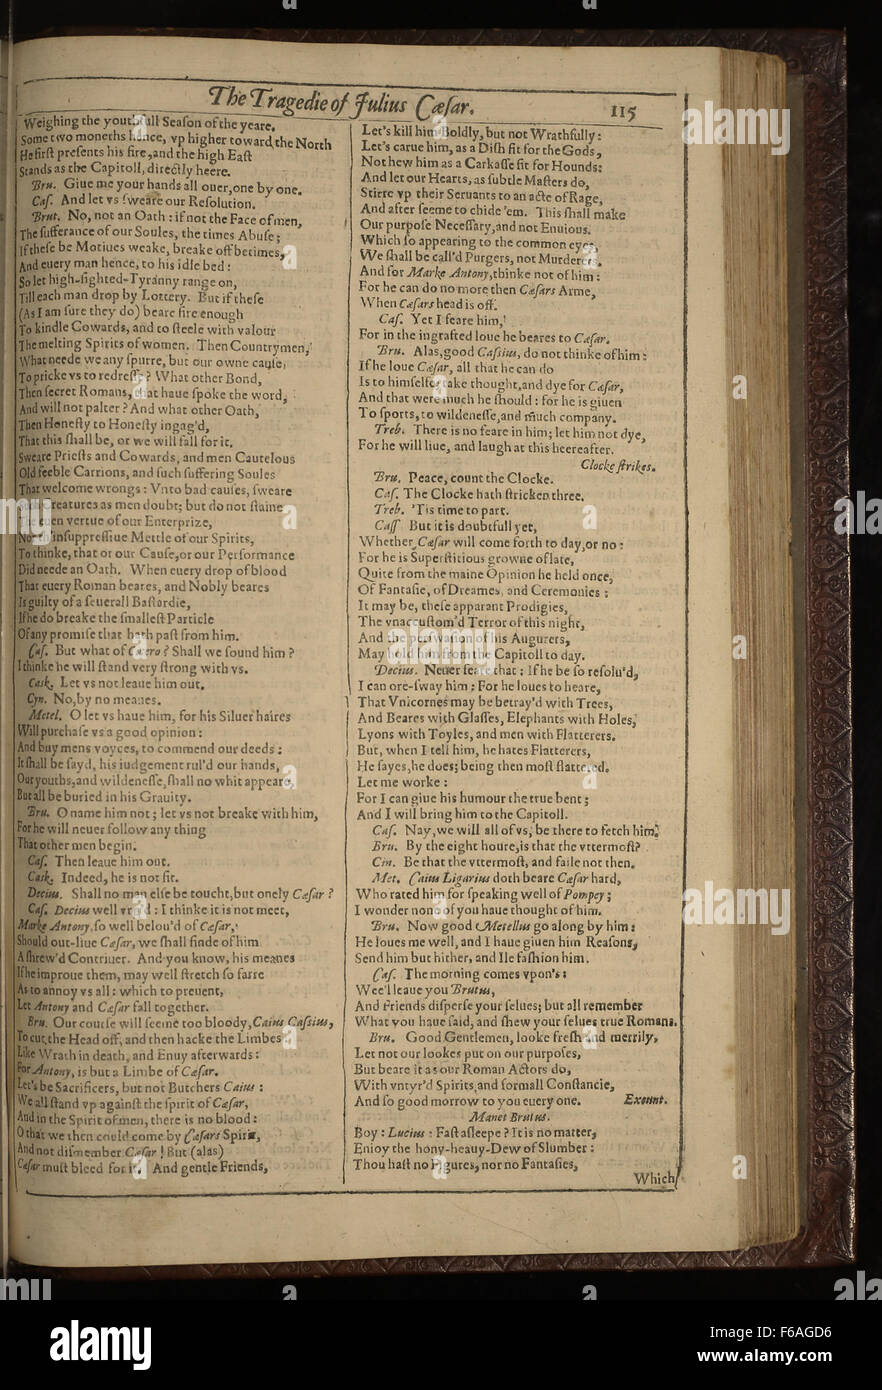 julius caesar first folio